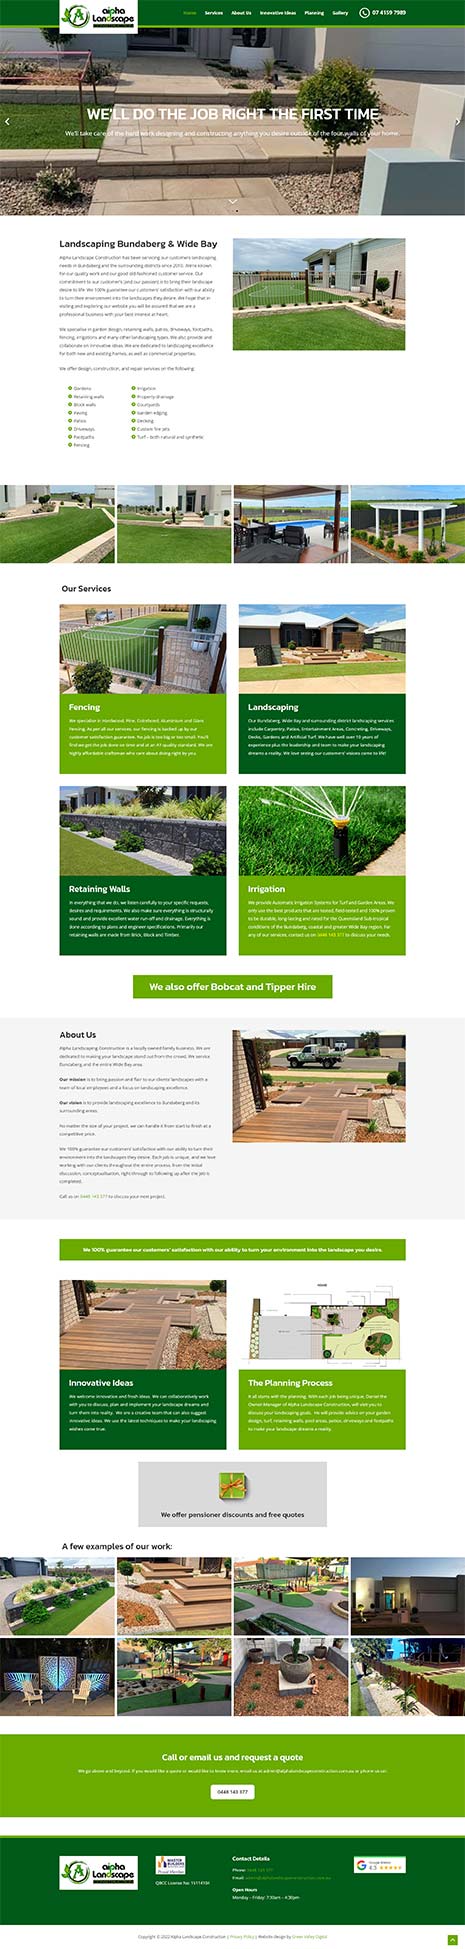 Landscaping business - website design